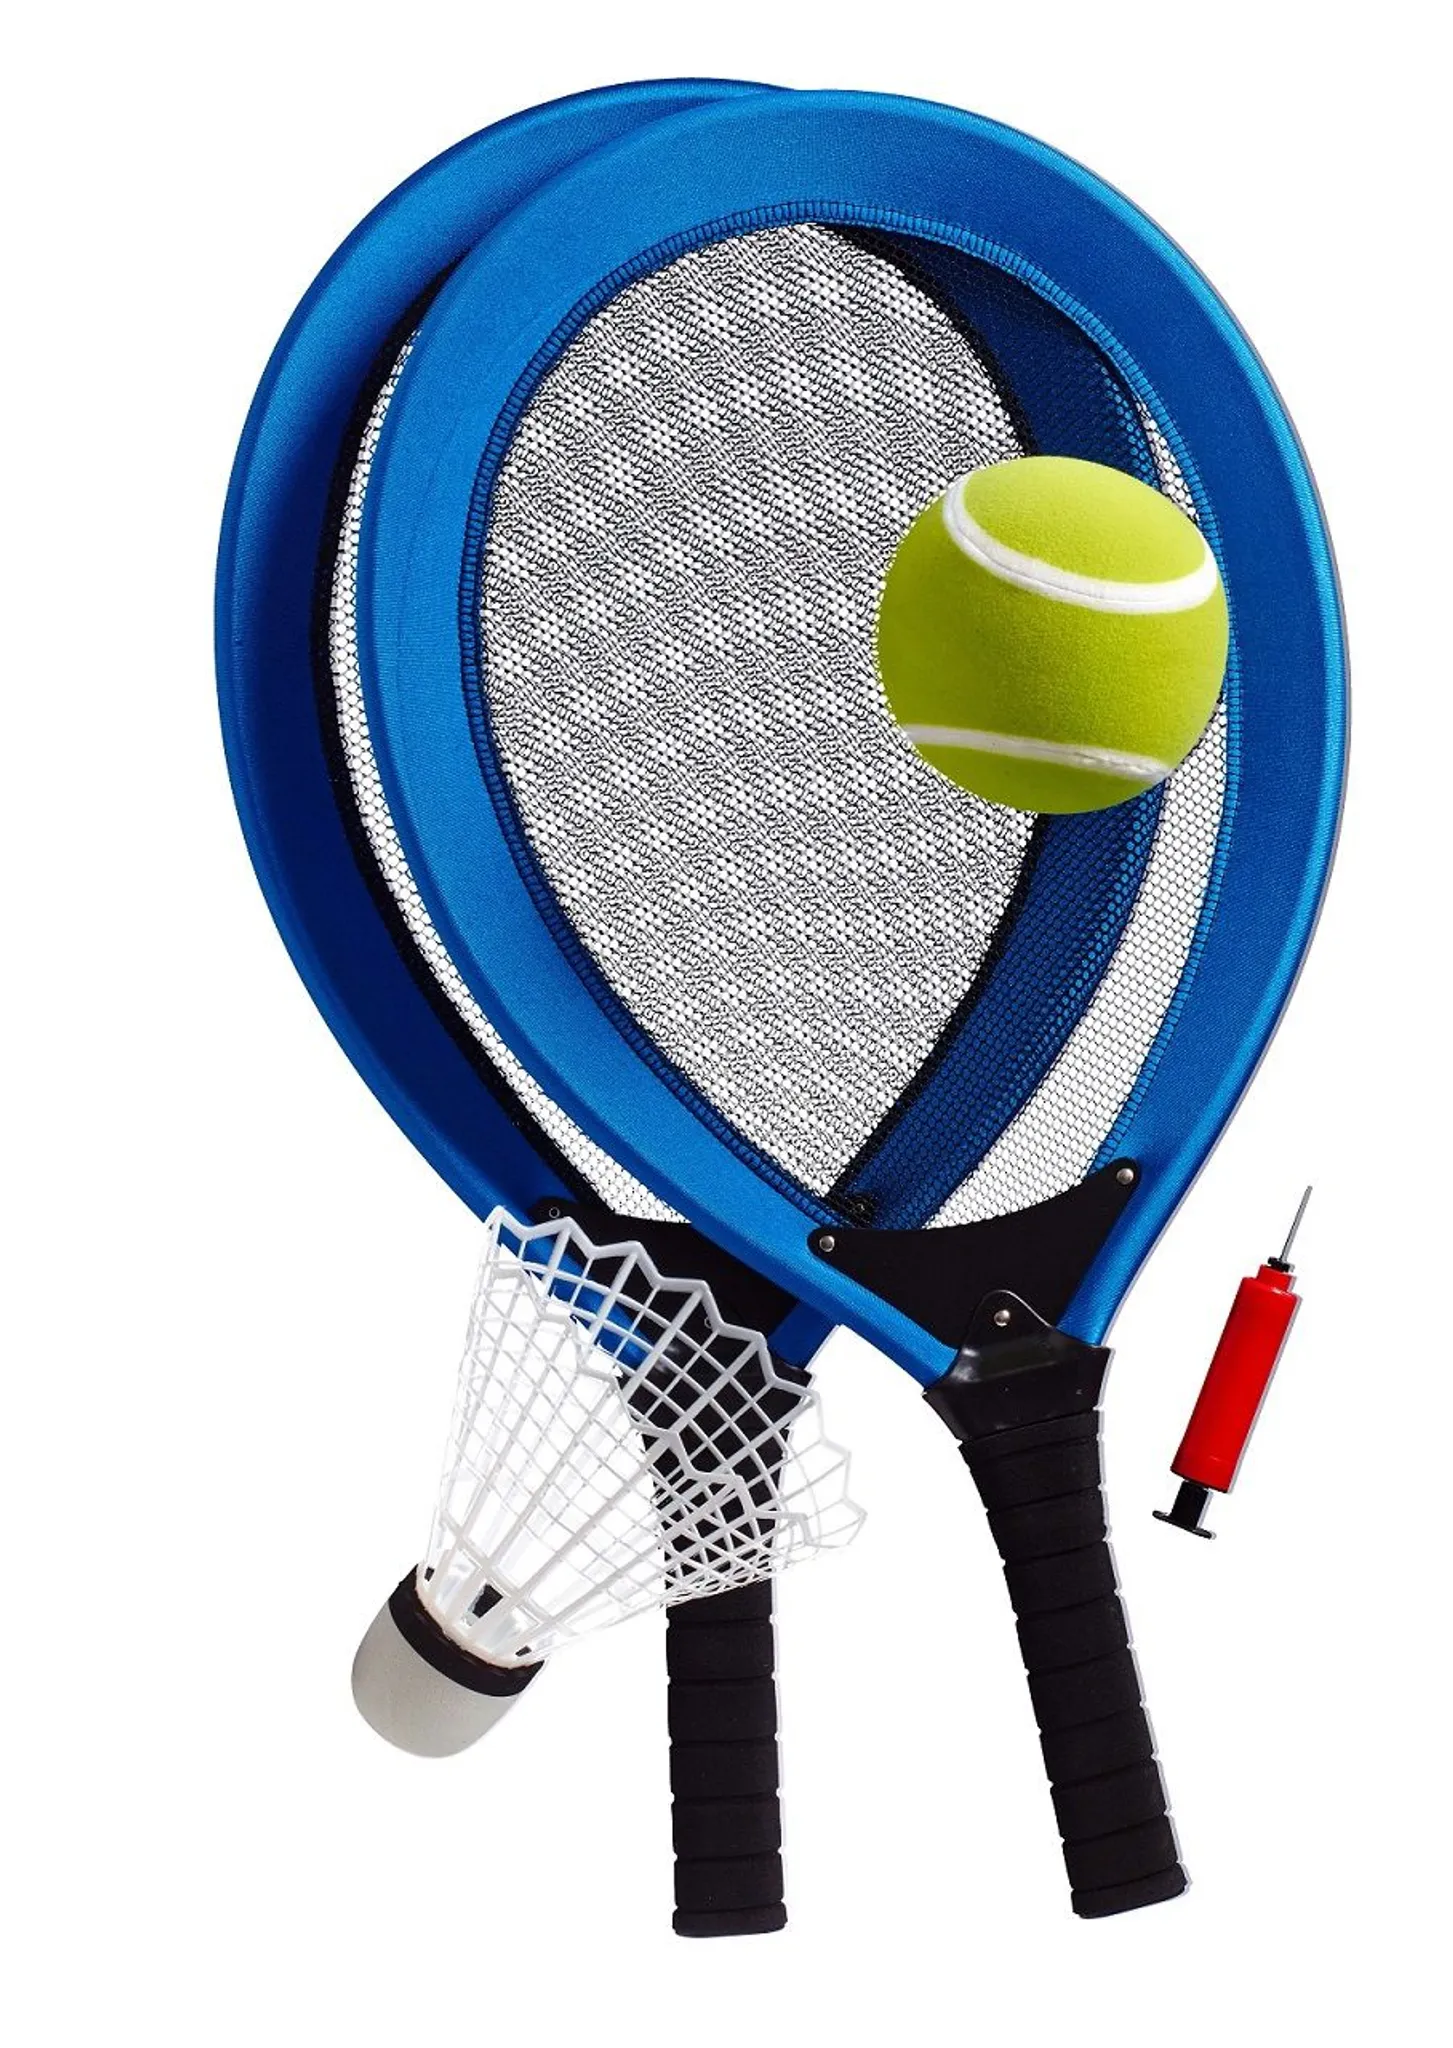 PHIBER-SPORTS Premium Swingball Set mit 2 ergonomischen Schlägern Langlebigkeit und maximaler Spielspaß Dank verstärkter Schnurr und Tennisball Twistball Ballspiel für Kinder und Erwachsene 